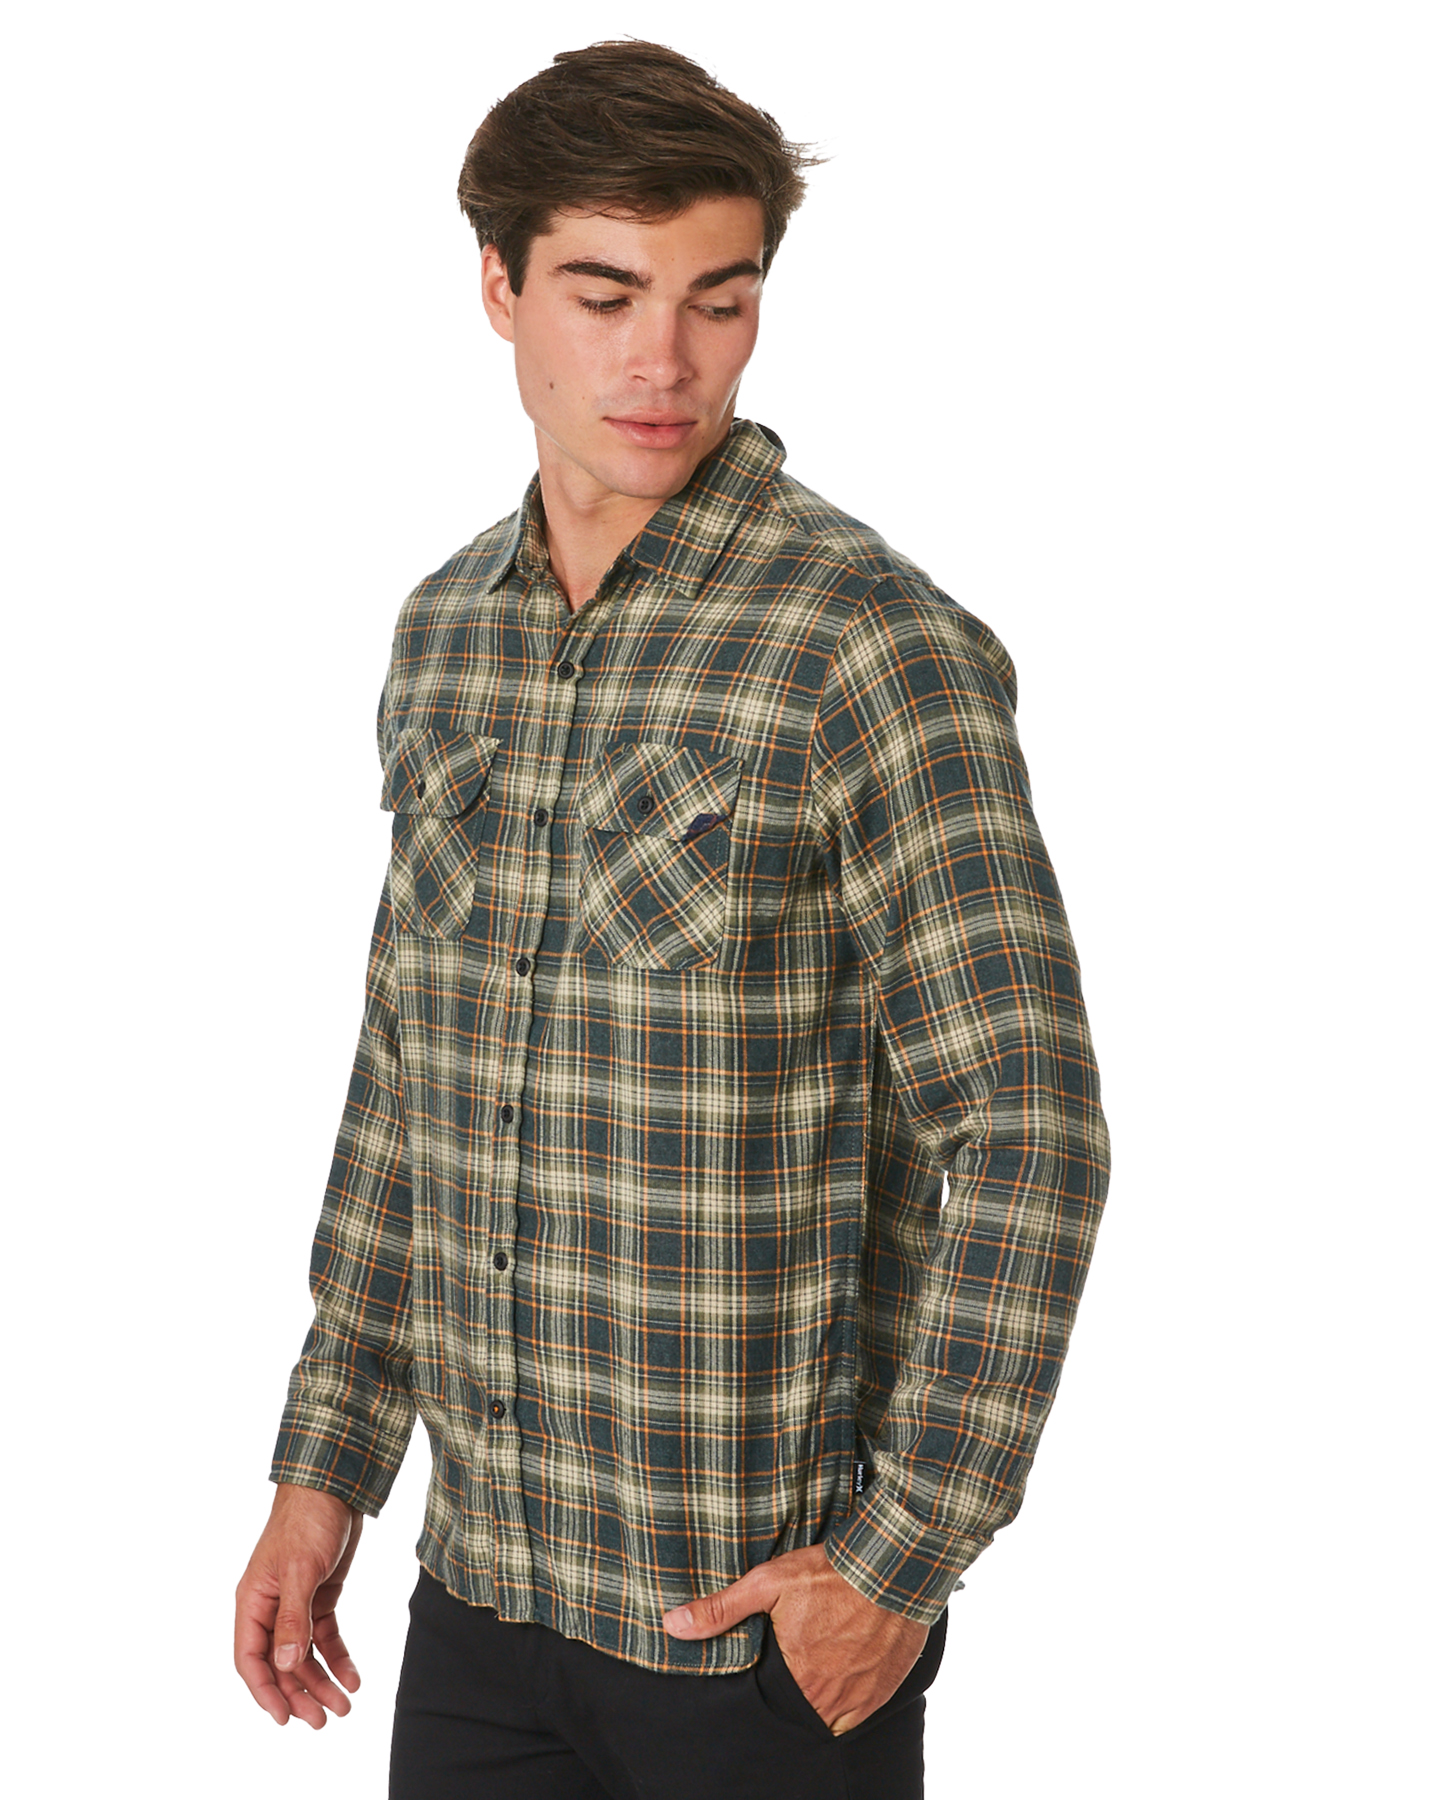 Hurley Walker Flannel Top Long Sleeve Shirt - Outdoor Green | SurfStitch